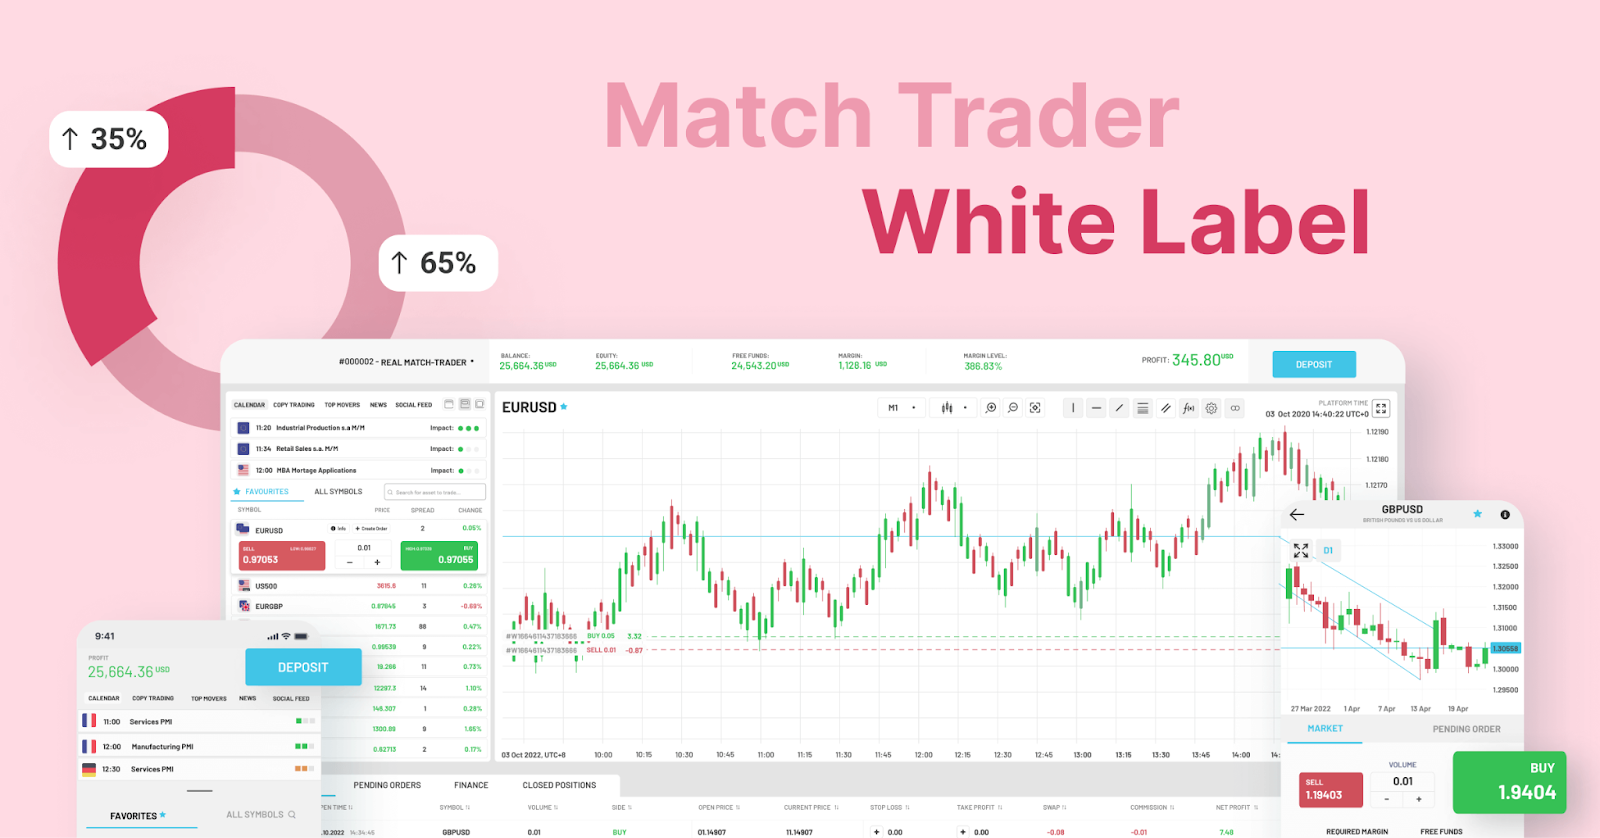 B2Broker သည် Match Trader White Label ဖြေရှင်းချက်အား ပွဲစားစီးပွားရေးလုပ်ငန်းများကို ကူညီပေးရန်အတွက် ပြည့်စုံသောကုန်သွယ်မှုပလပ်ဖောင်း 1 ကိုတည်ဆောက်ရန်